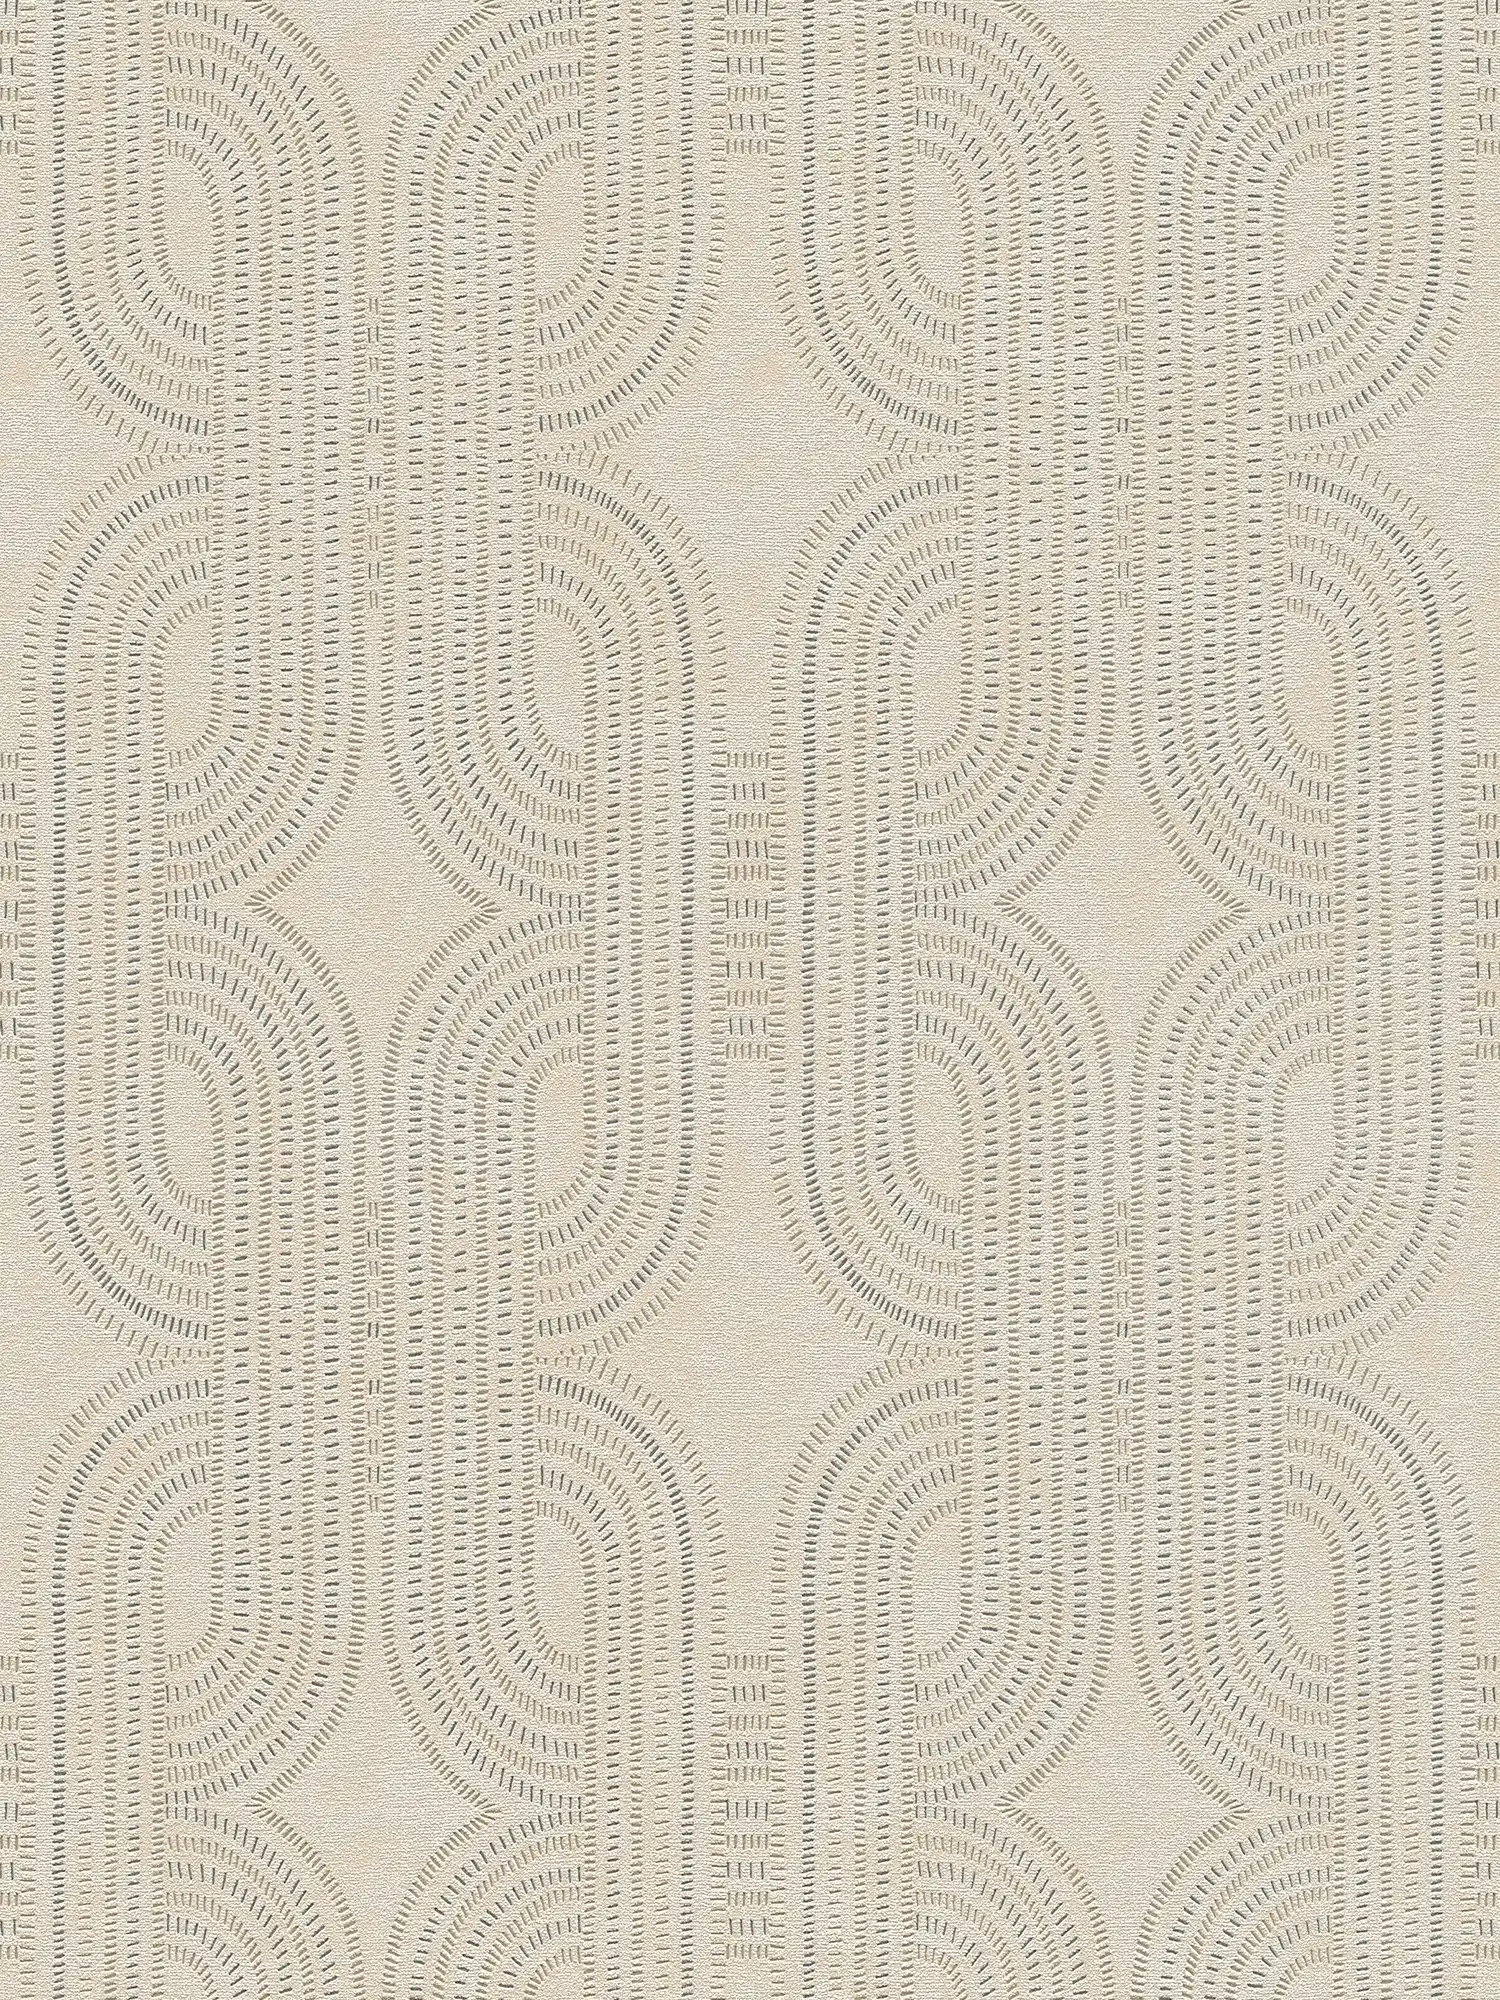 Grafisch retro vliesbehang - beige, metallic, grijs
